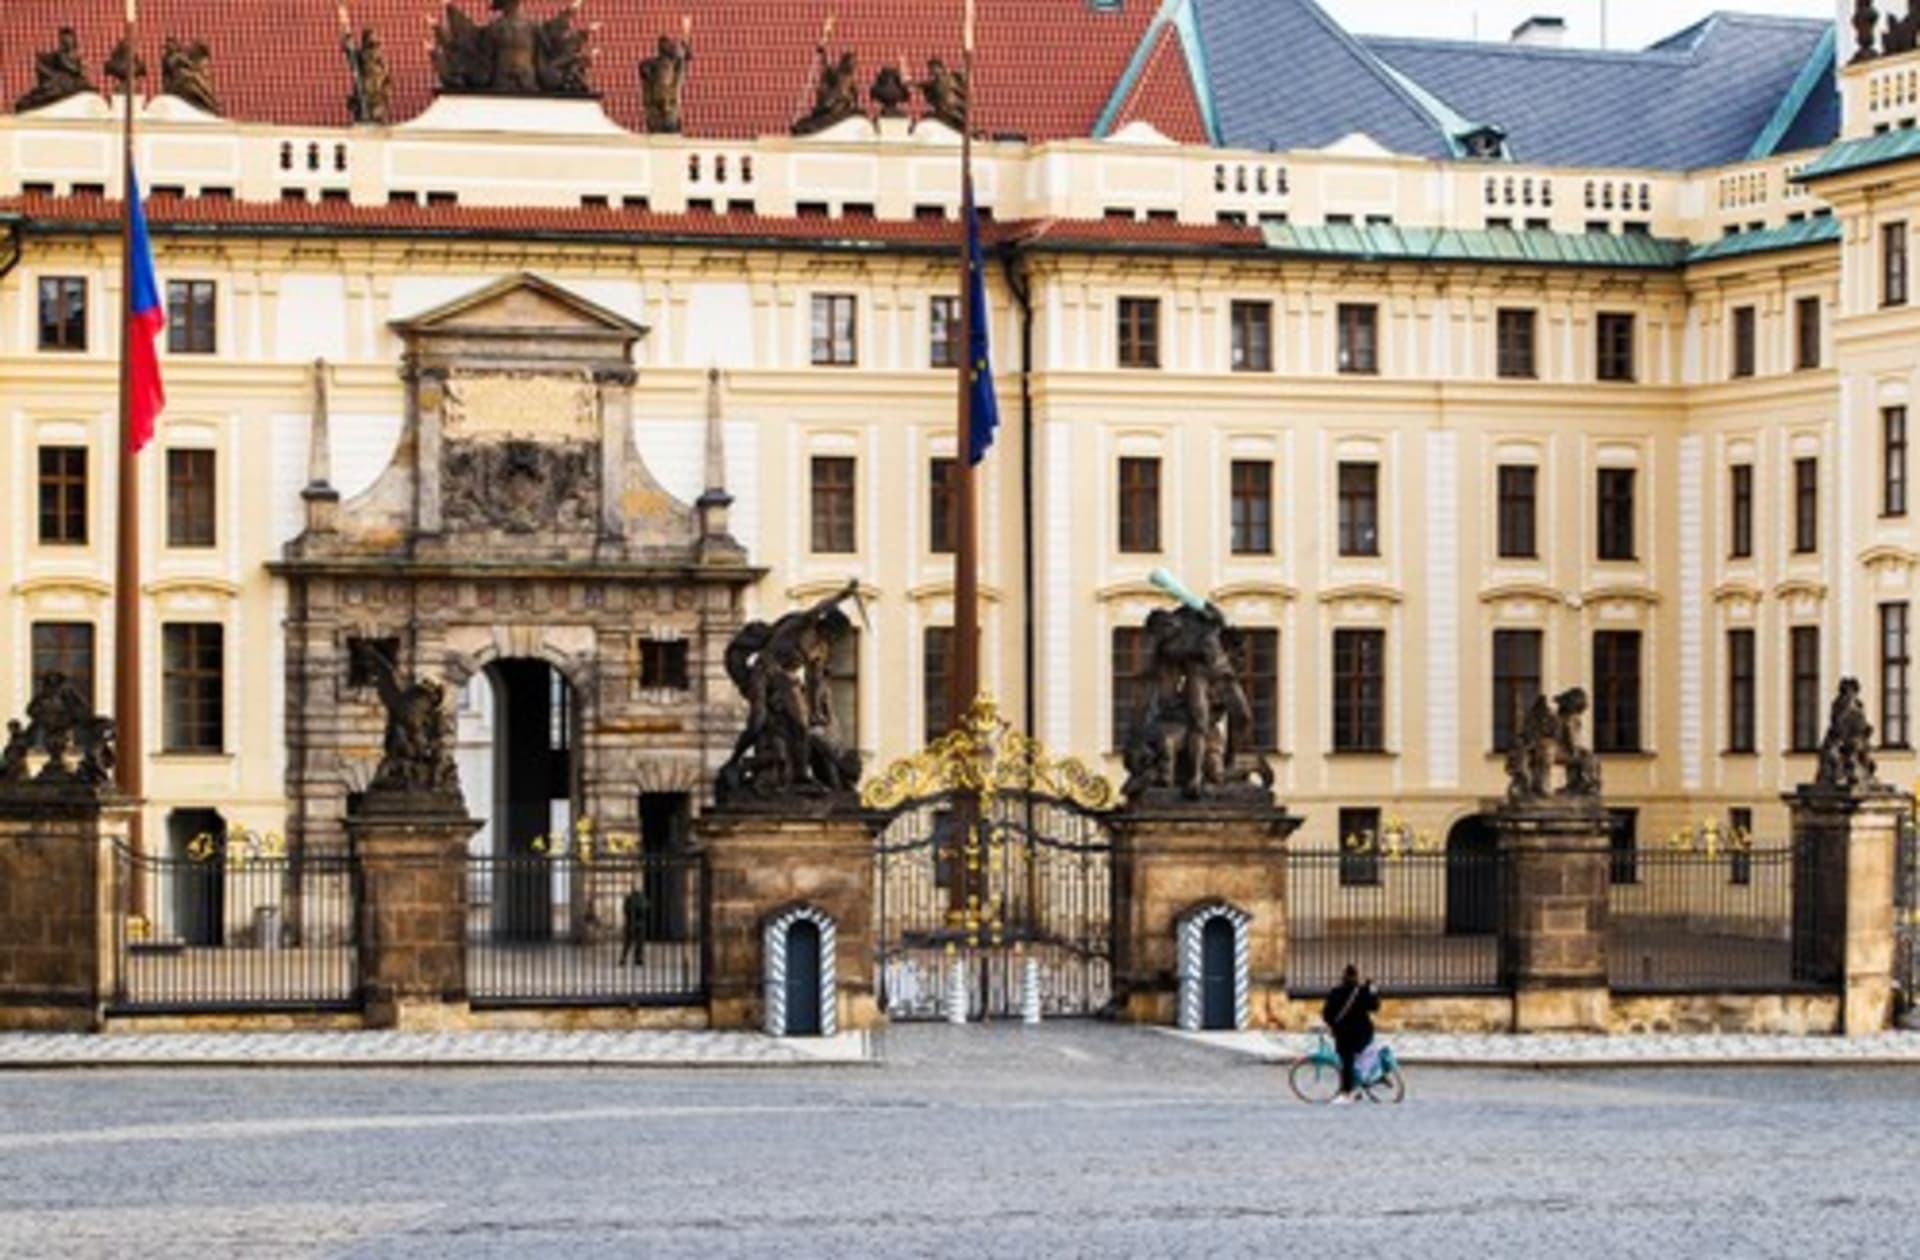 Ubytování přímo v areálu Pražského hradu vyloučily podle prezidentova mluvčího Jiřího Ovčáčka bezpečnostní složky.